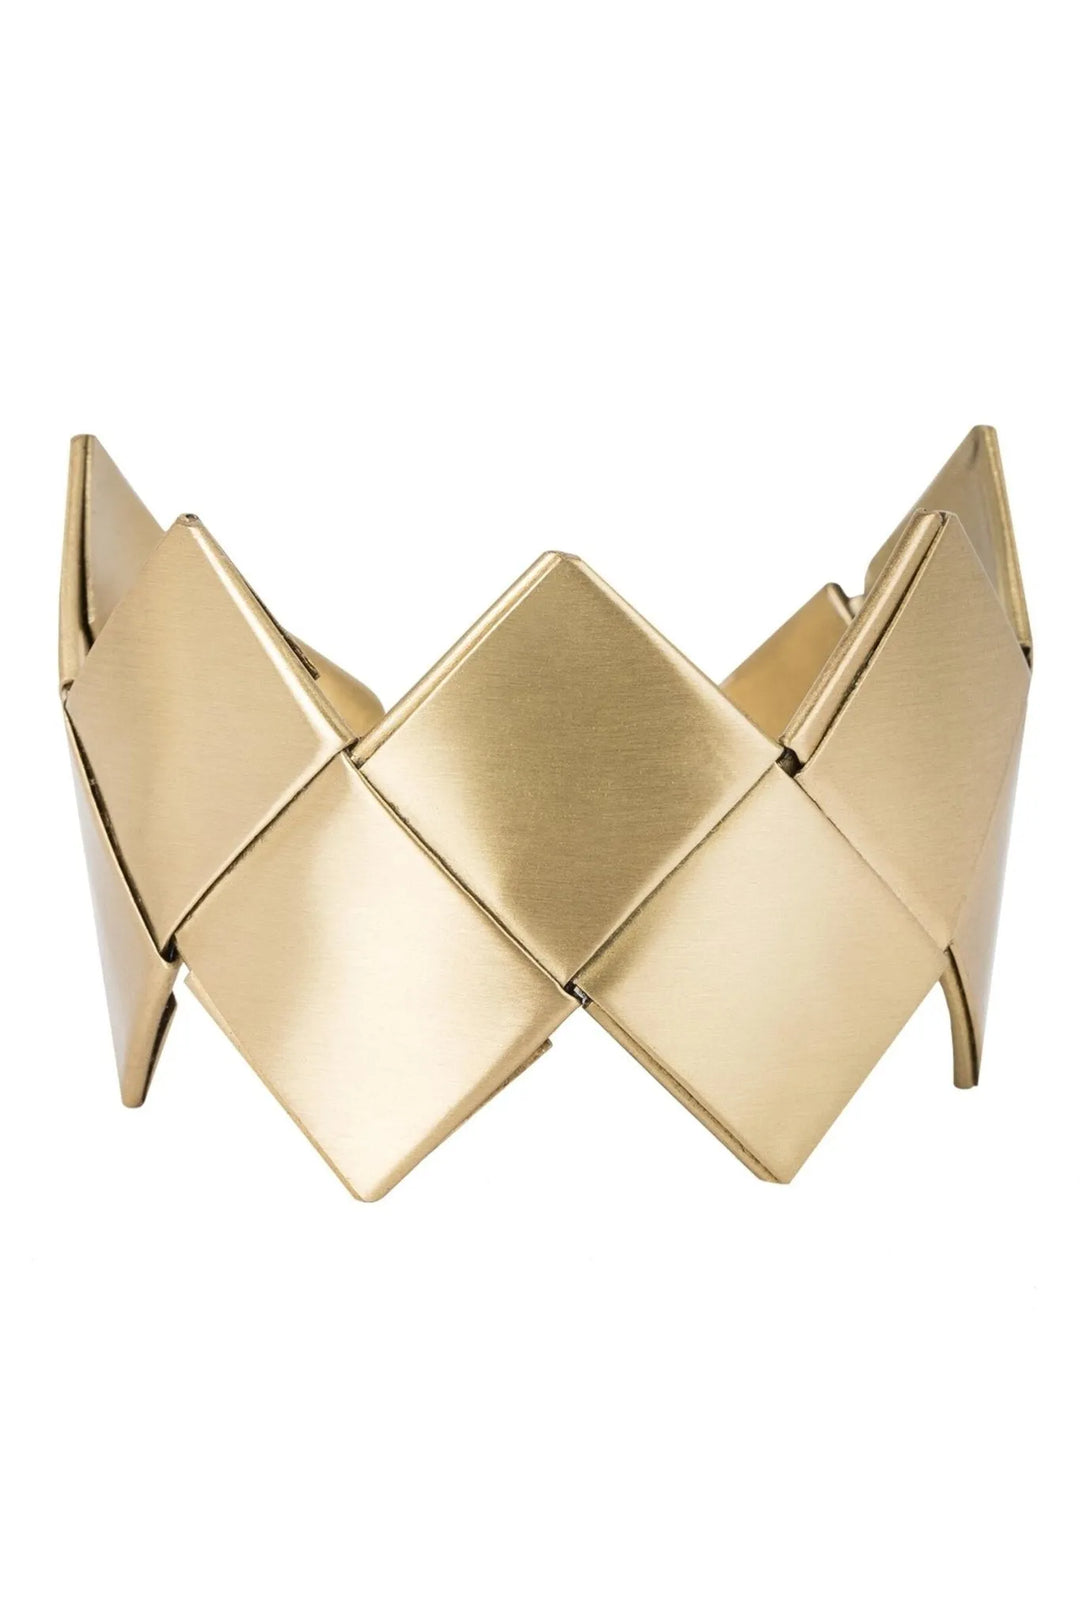 Hera Cuff Bracelet Gold